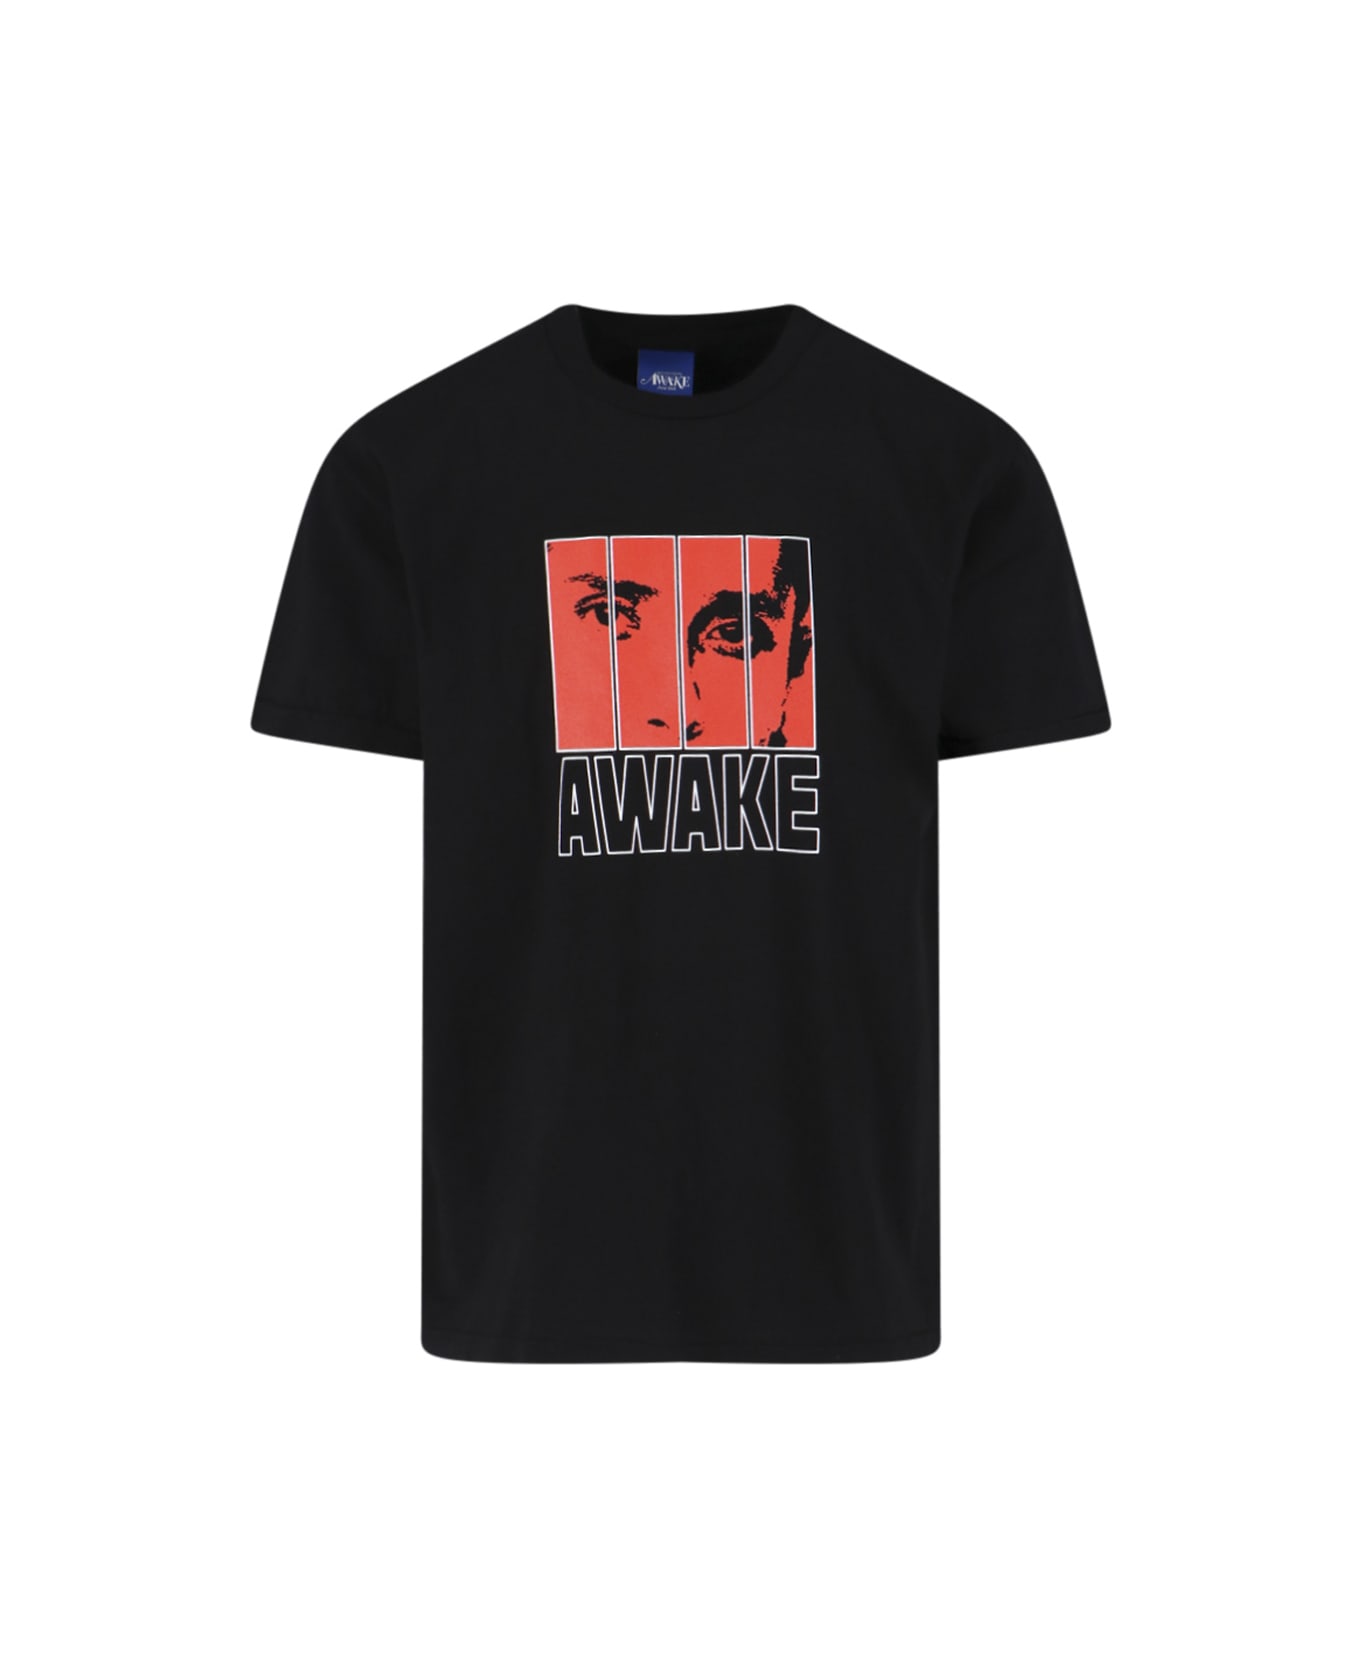 Awake NY 'vegas' T-shirt - Black  